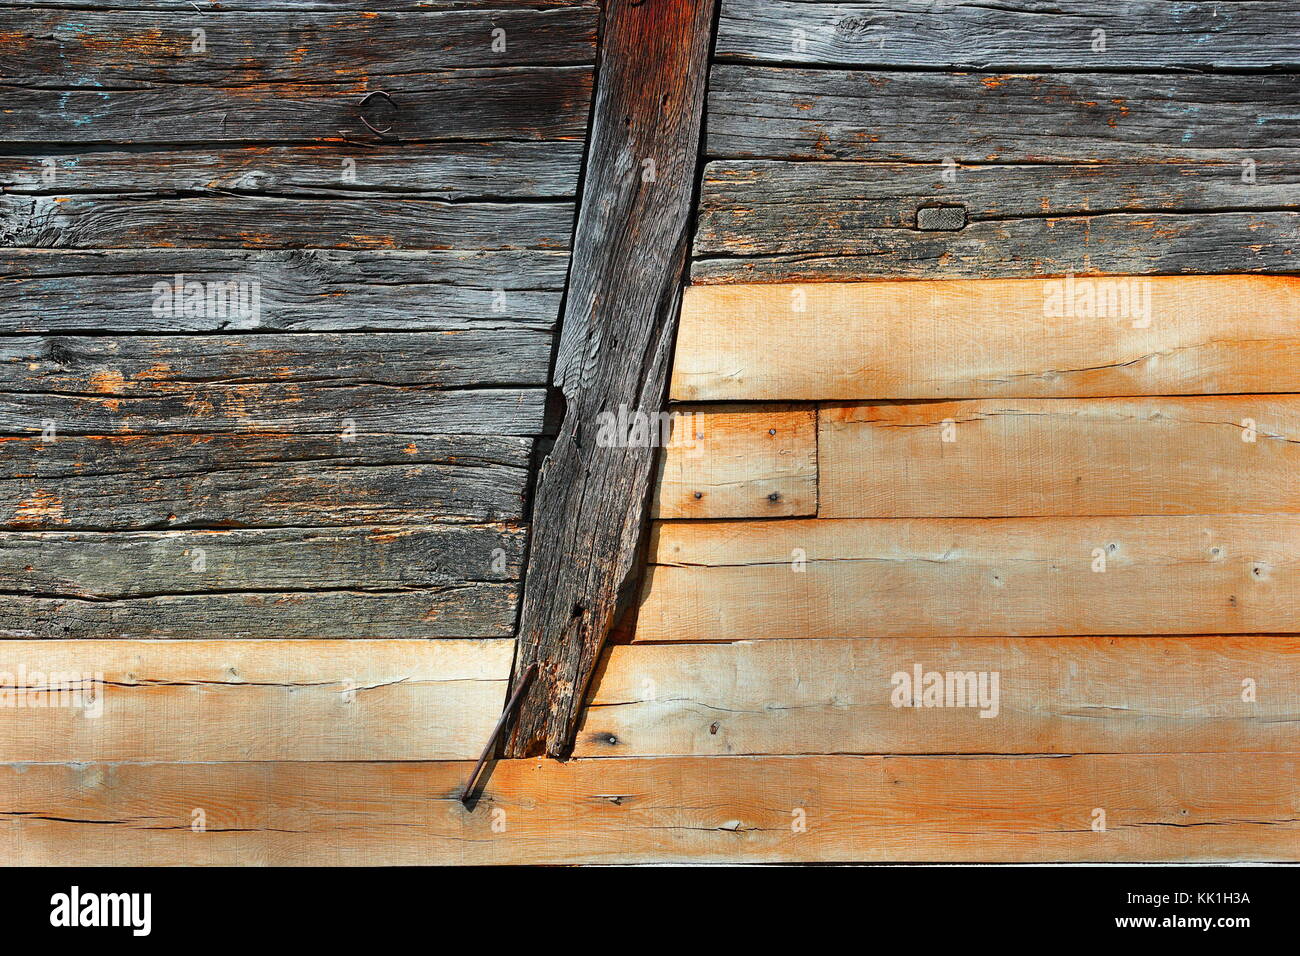 La texture du mur de bois de chêne, poutres de bois en arrière-plan Banque D'Images